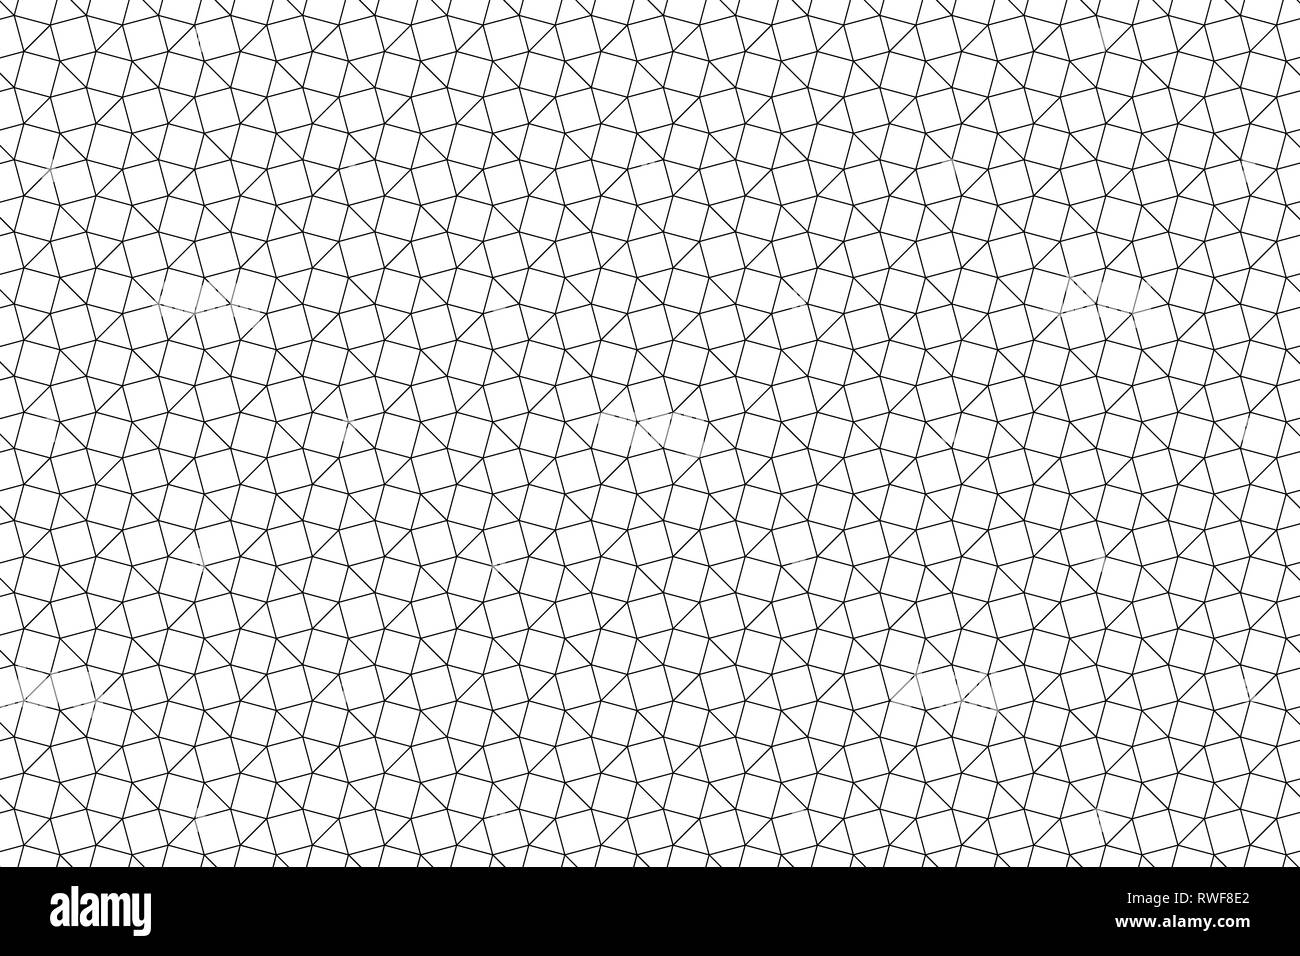 Résumé motif de fond, triangle noir avec contour mesh grille carrée Banque D'Images